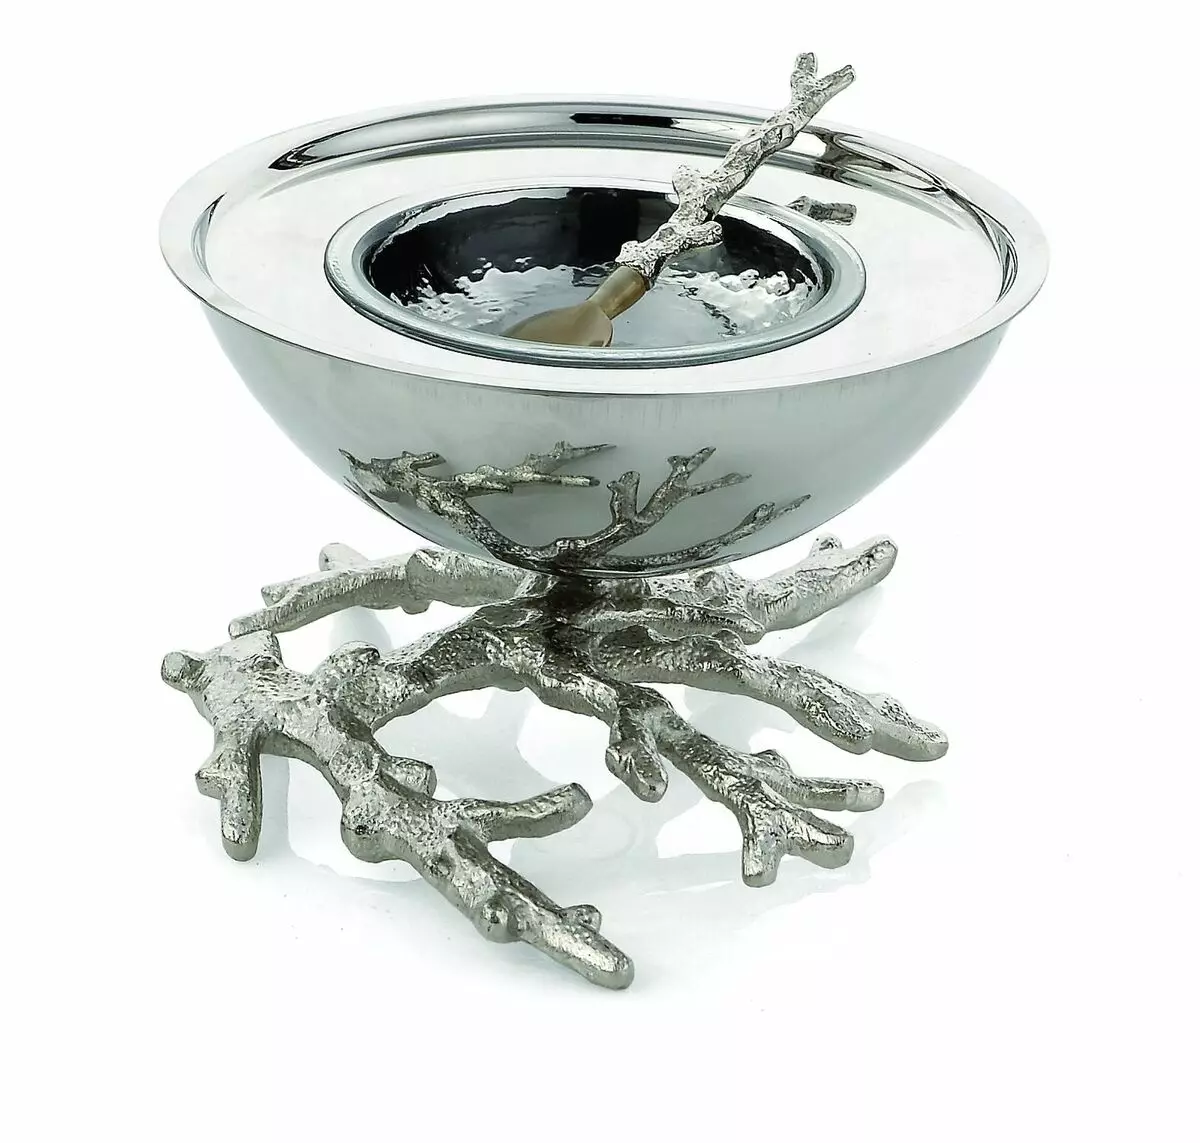 Ichornan (41 fotos): Silverware, decorado com FINFT, modelos de cristal com colher e tampa, fisher e 